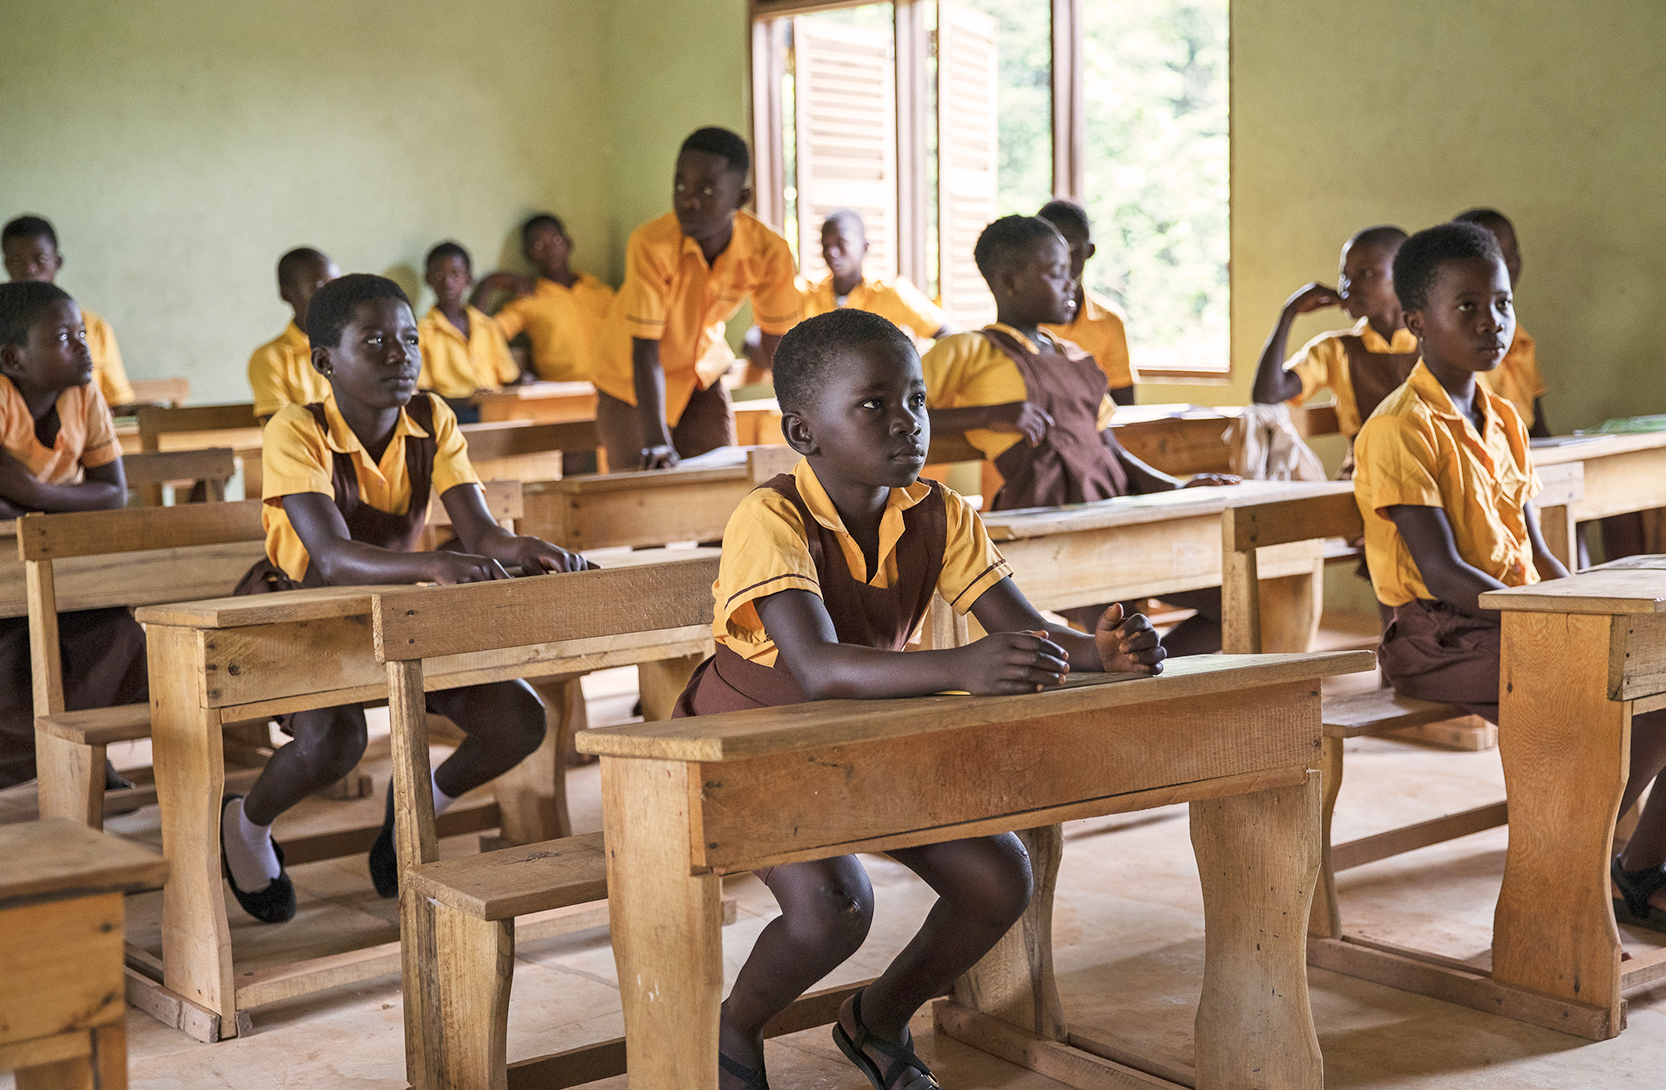 Länsi-Afrikan kaakaontuotanto nojaa sitkeästi haitalliseen lapsityöhön. Kuvassa ghanalaisia lapsia, jotka ovat Reilun kaupan lisällä rakennettussa koulussa.